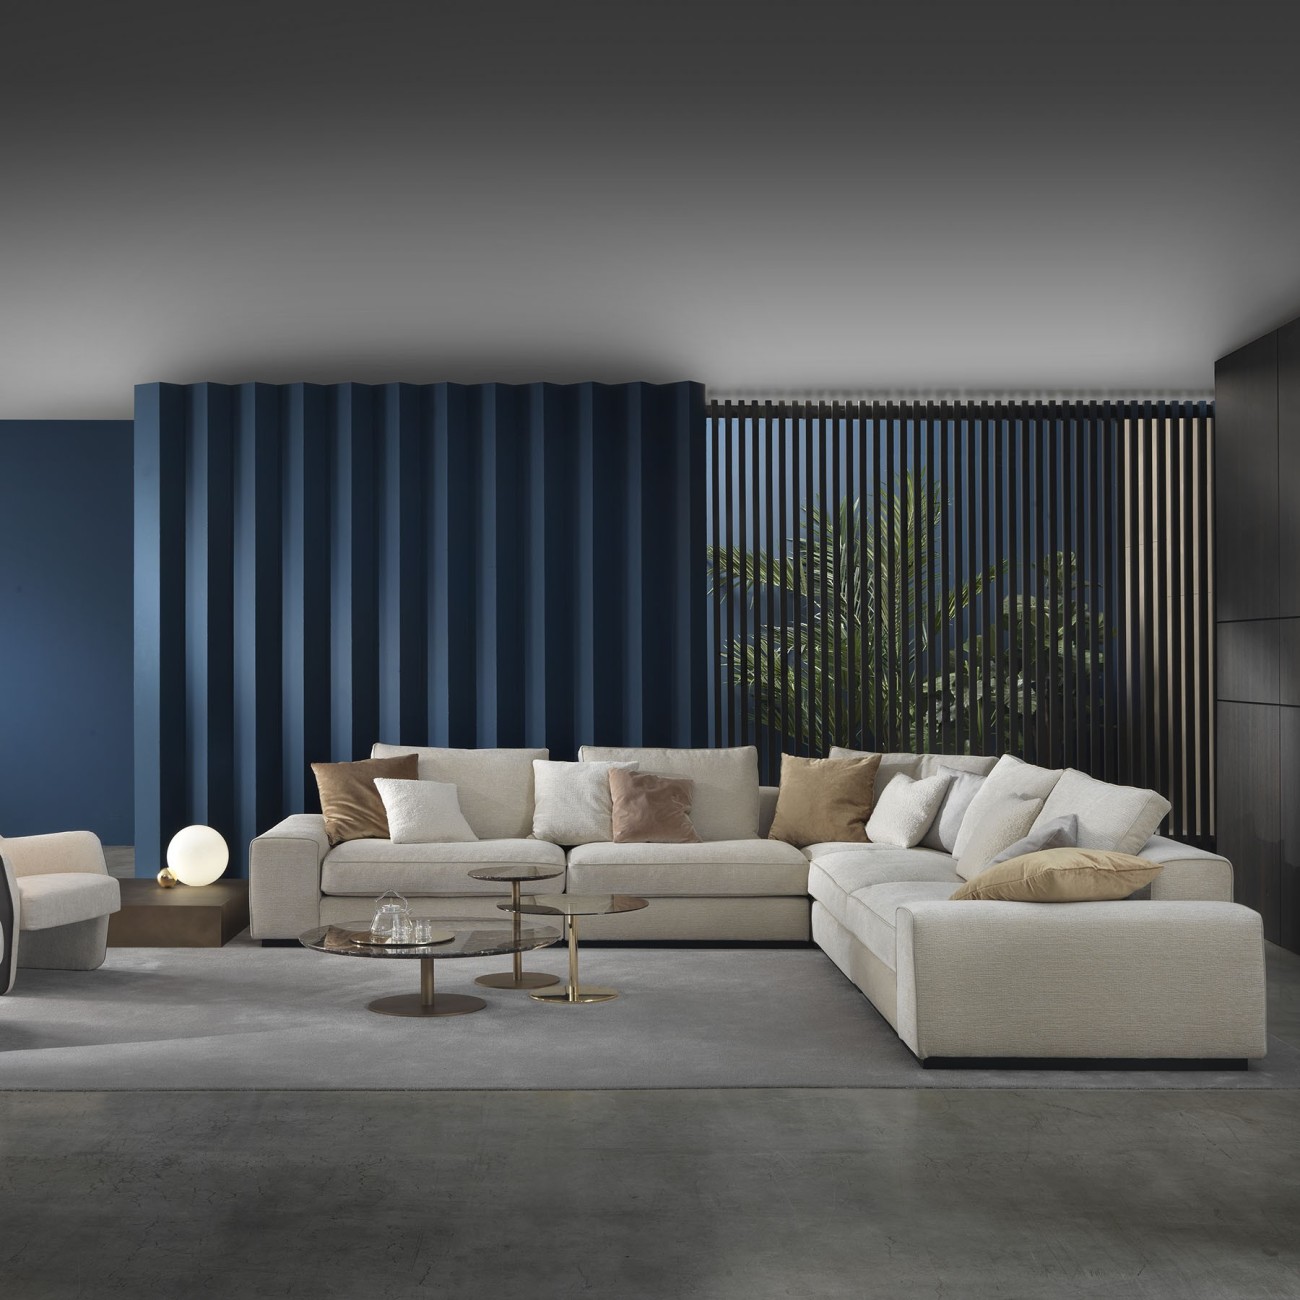 Modular and composable sofas: an innovative design